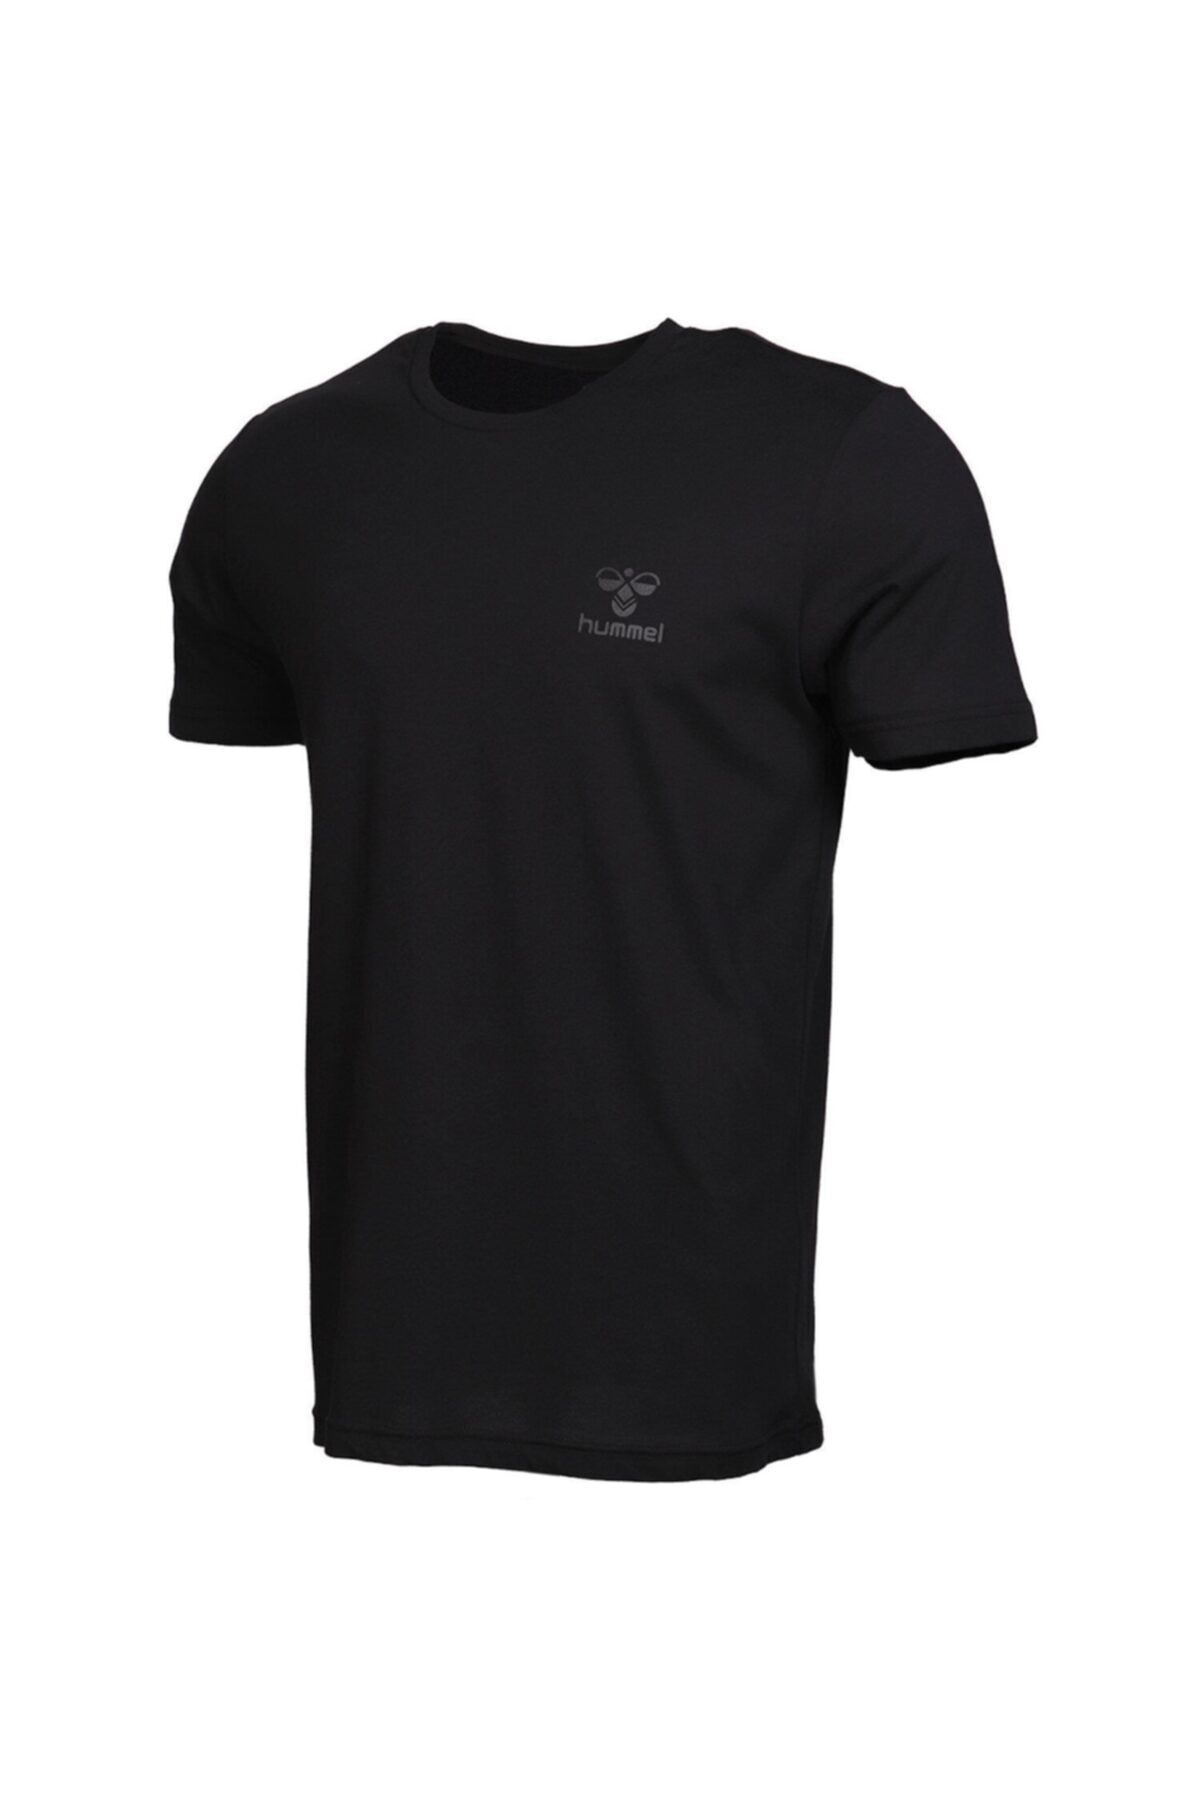 hummel Kevins - Erkek Siyah T-Shirt